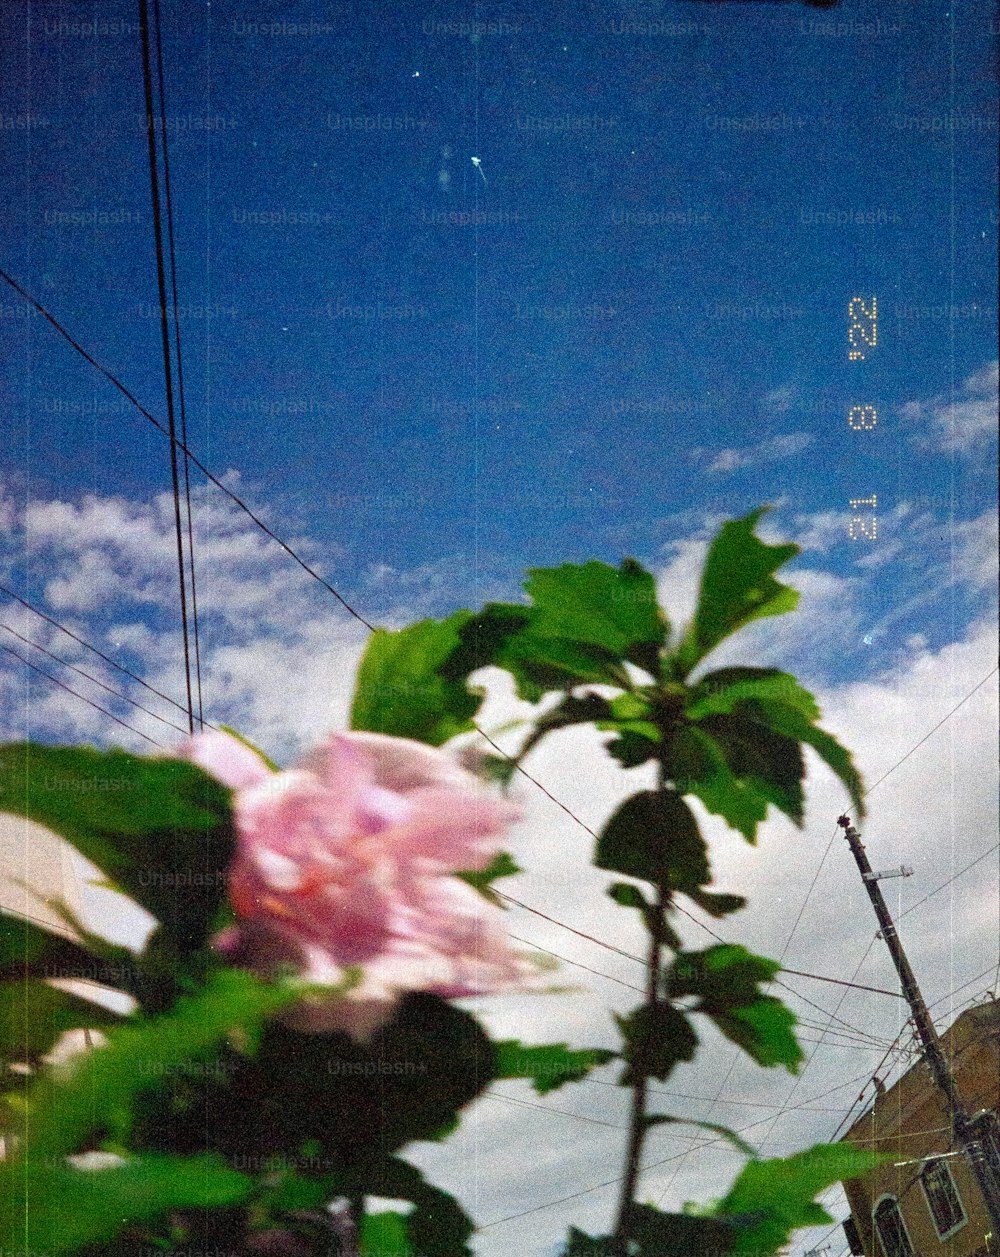 eine rosa Blume, die auf einer üppig grünen Pflanze sitzt